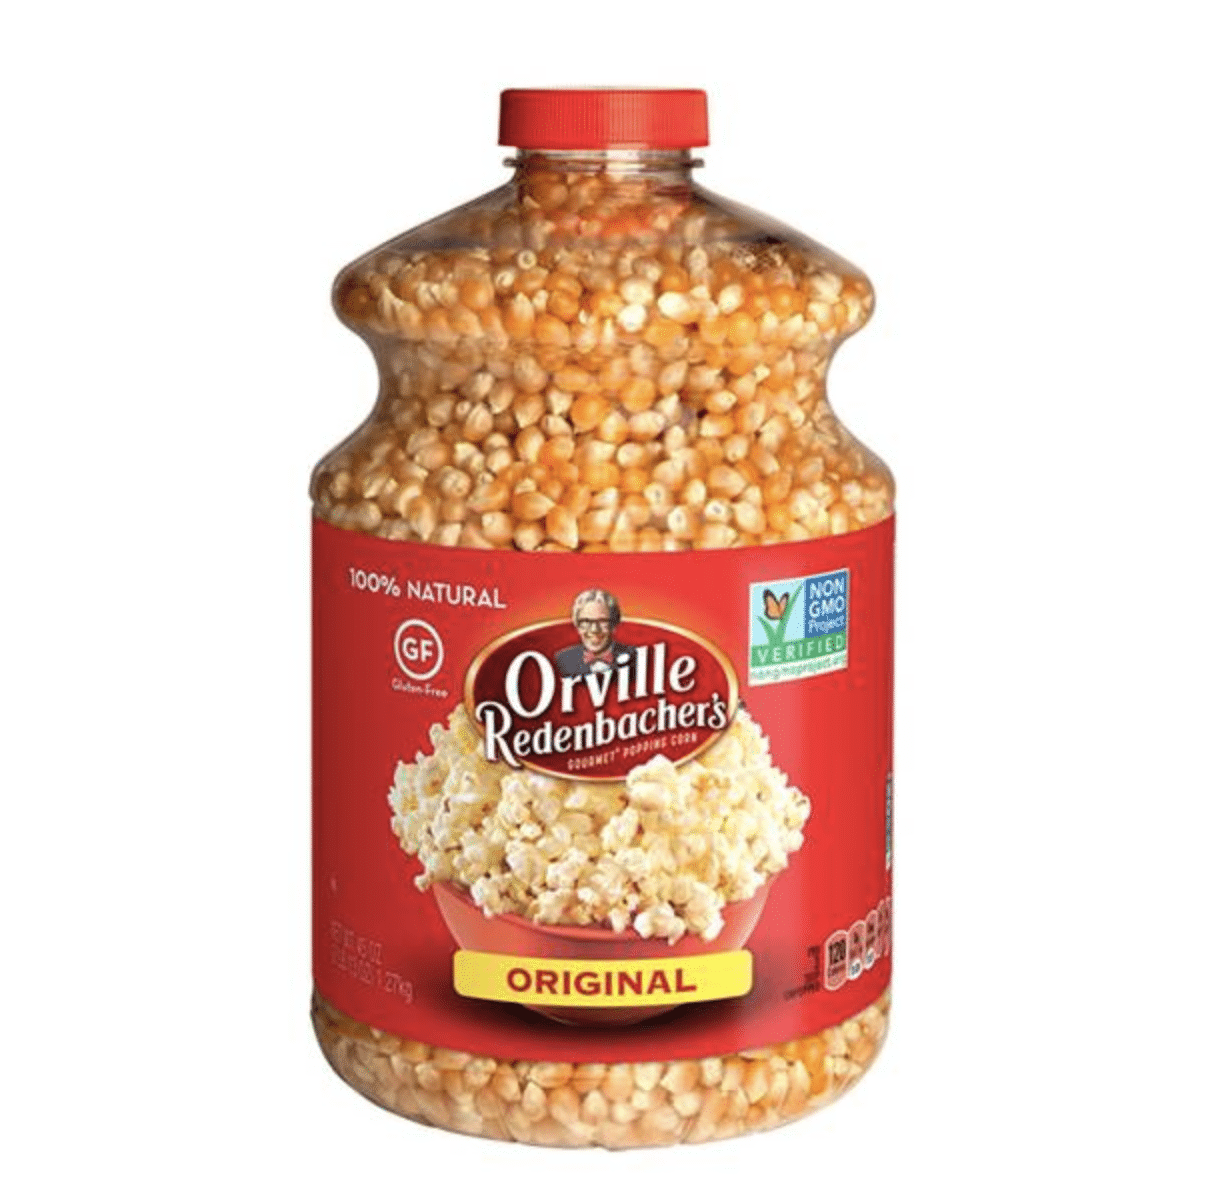 A large jar of of Orville Redenbacher's original popcorn kernels